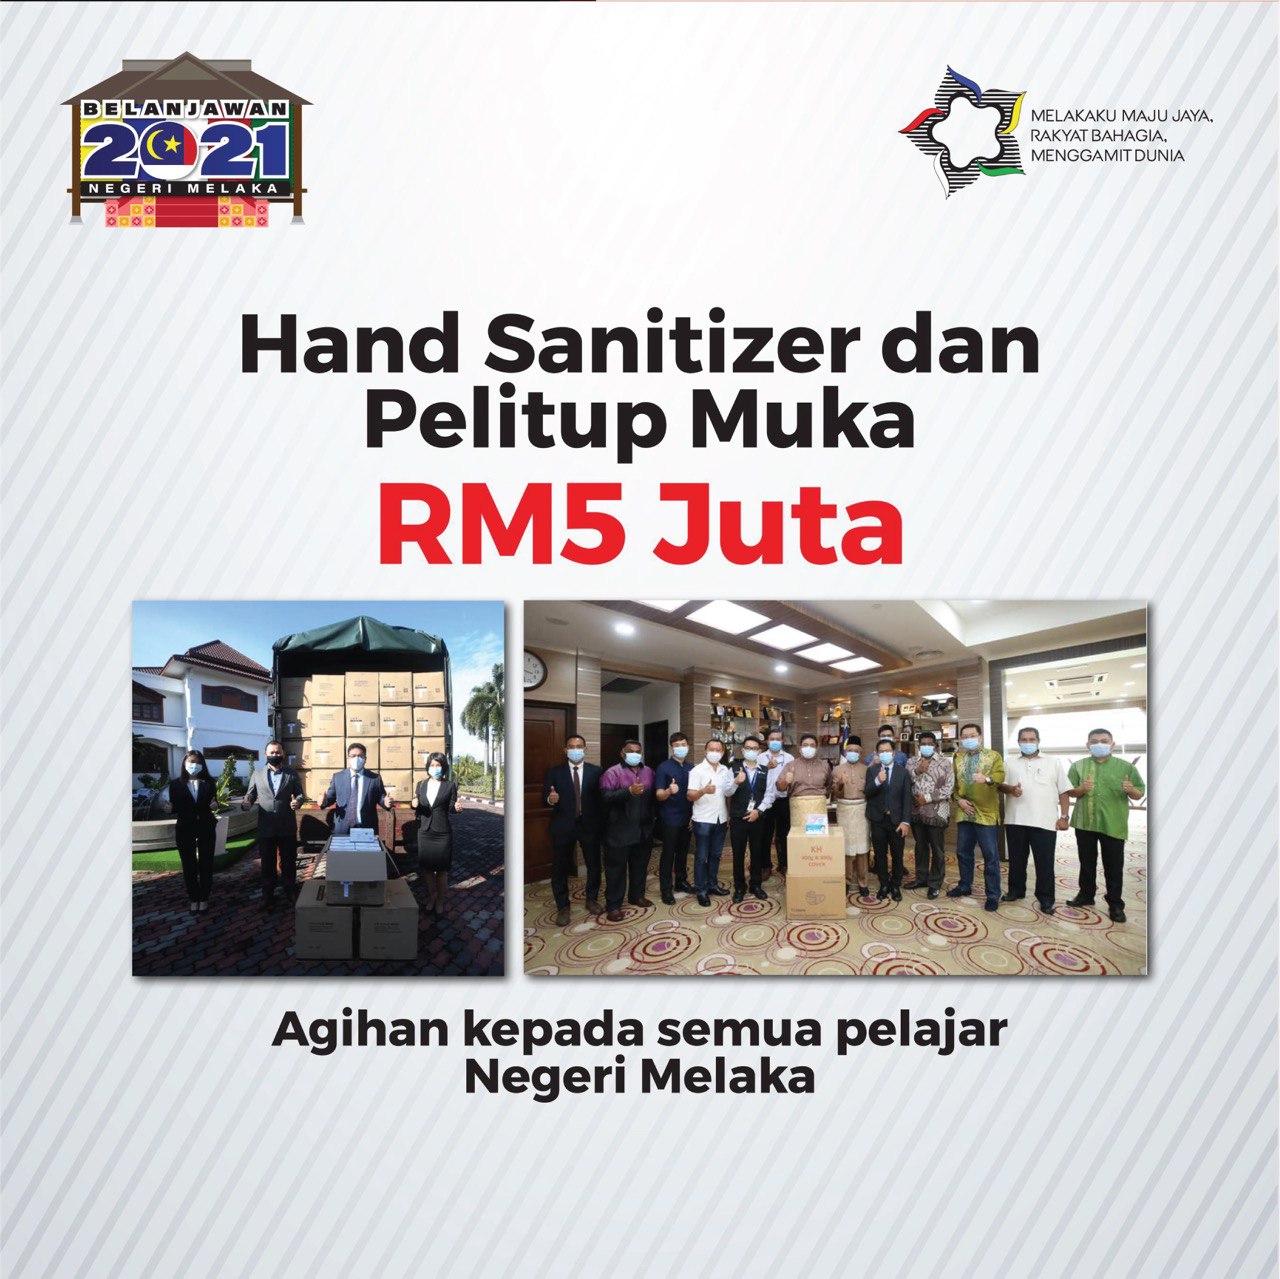 Pelitup muka, ‘hand sanitizer’ percuma kepada pelajar di Melaka